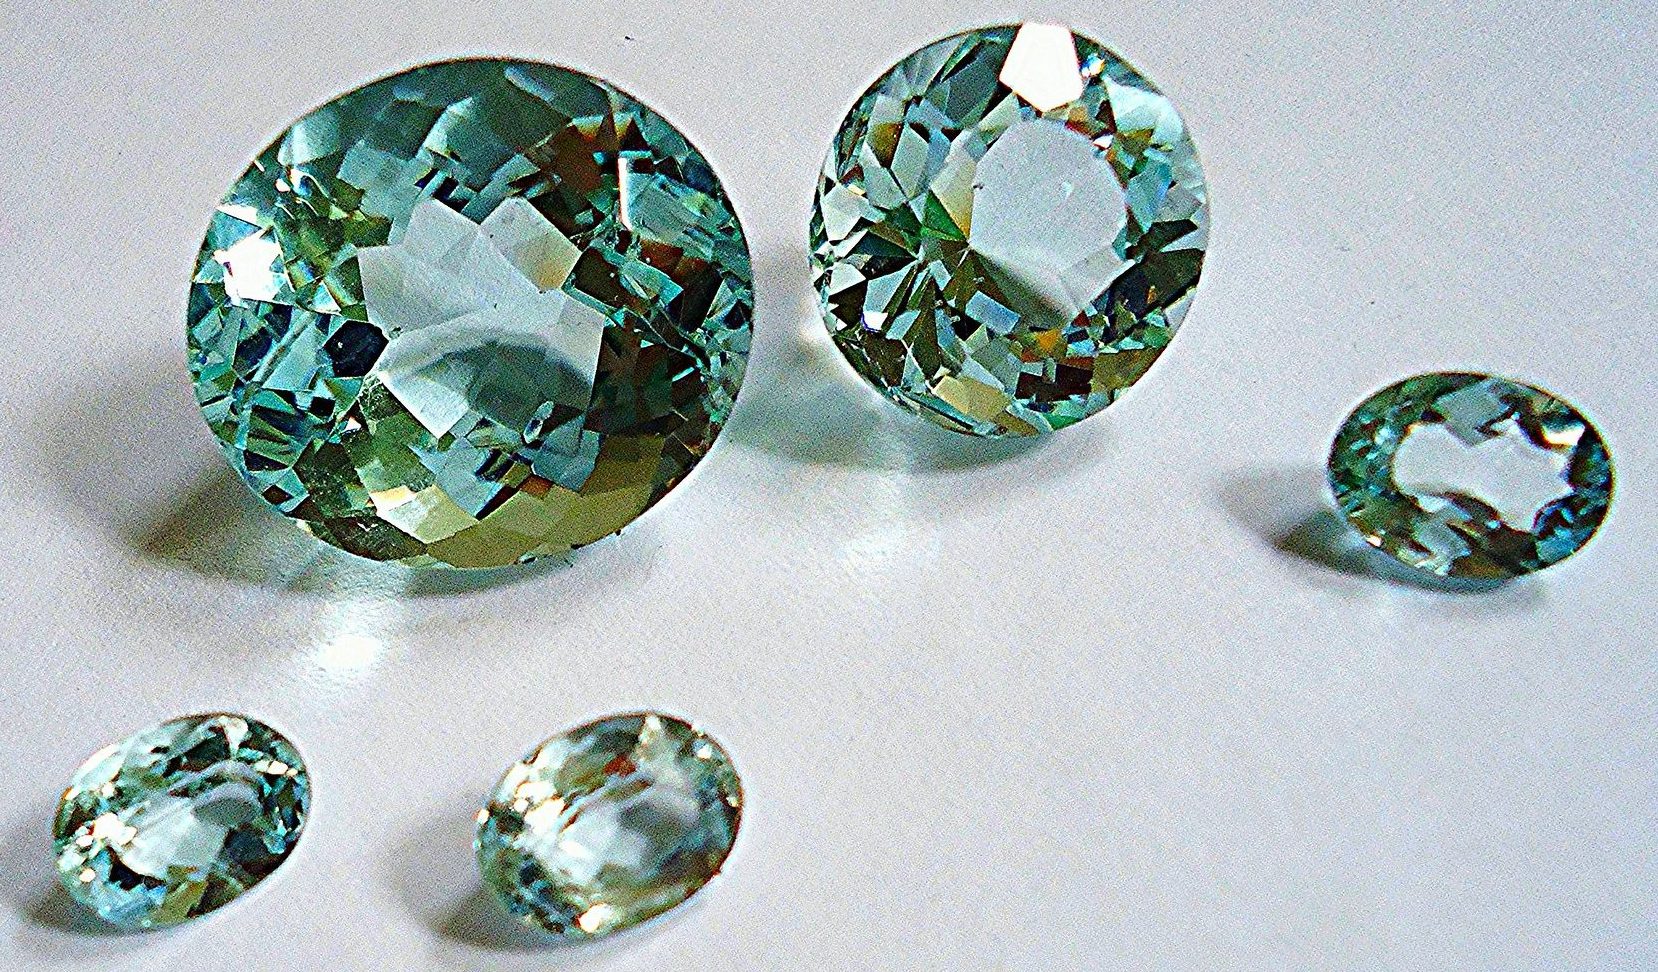 Аквамарин - некоторые камни имеют зеленоватый оттенок